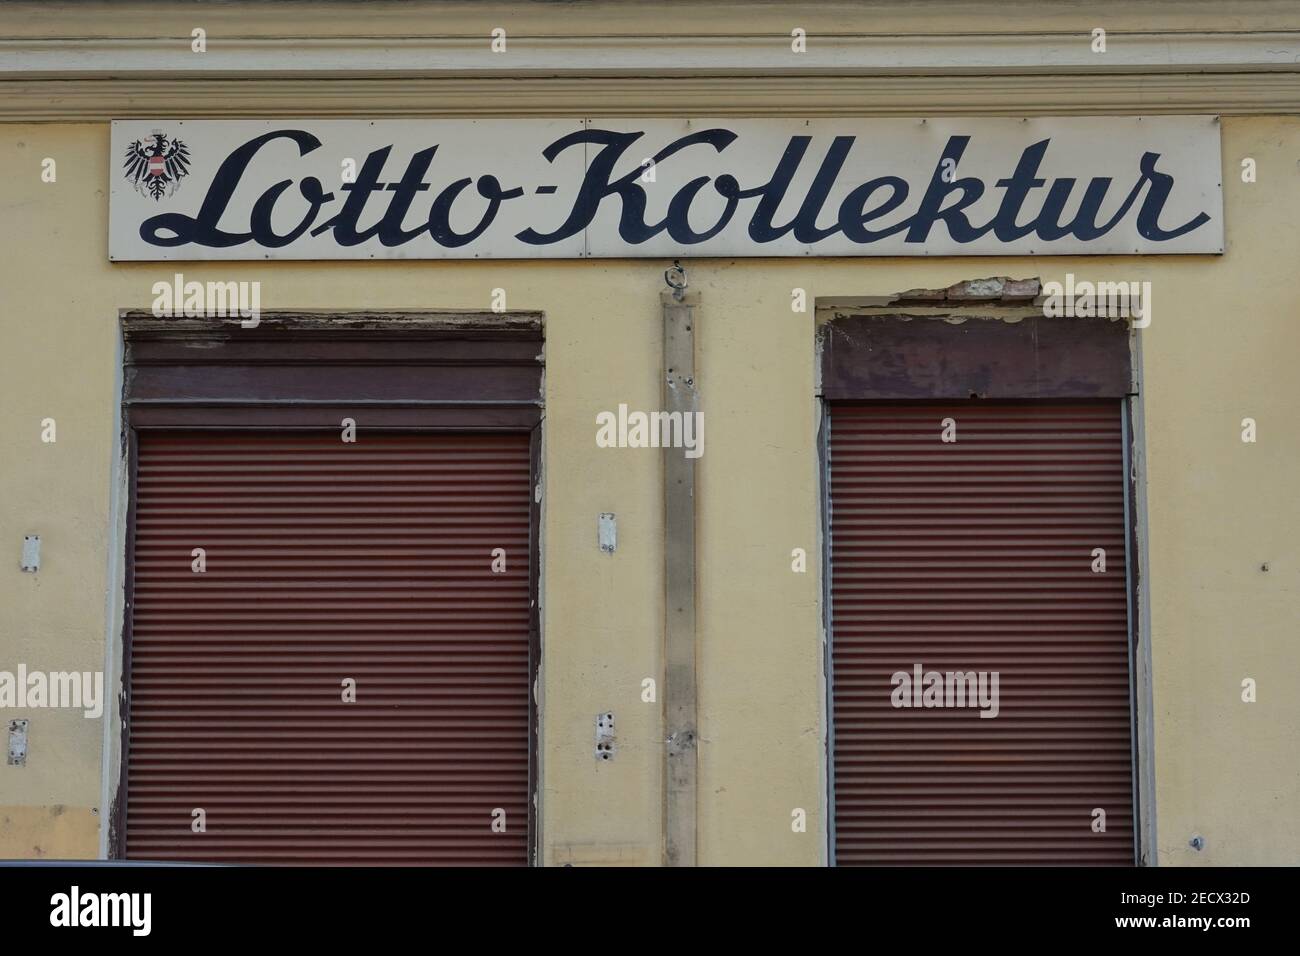 Wien, Lotto-Kollektur Stock Photo